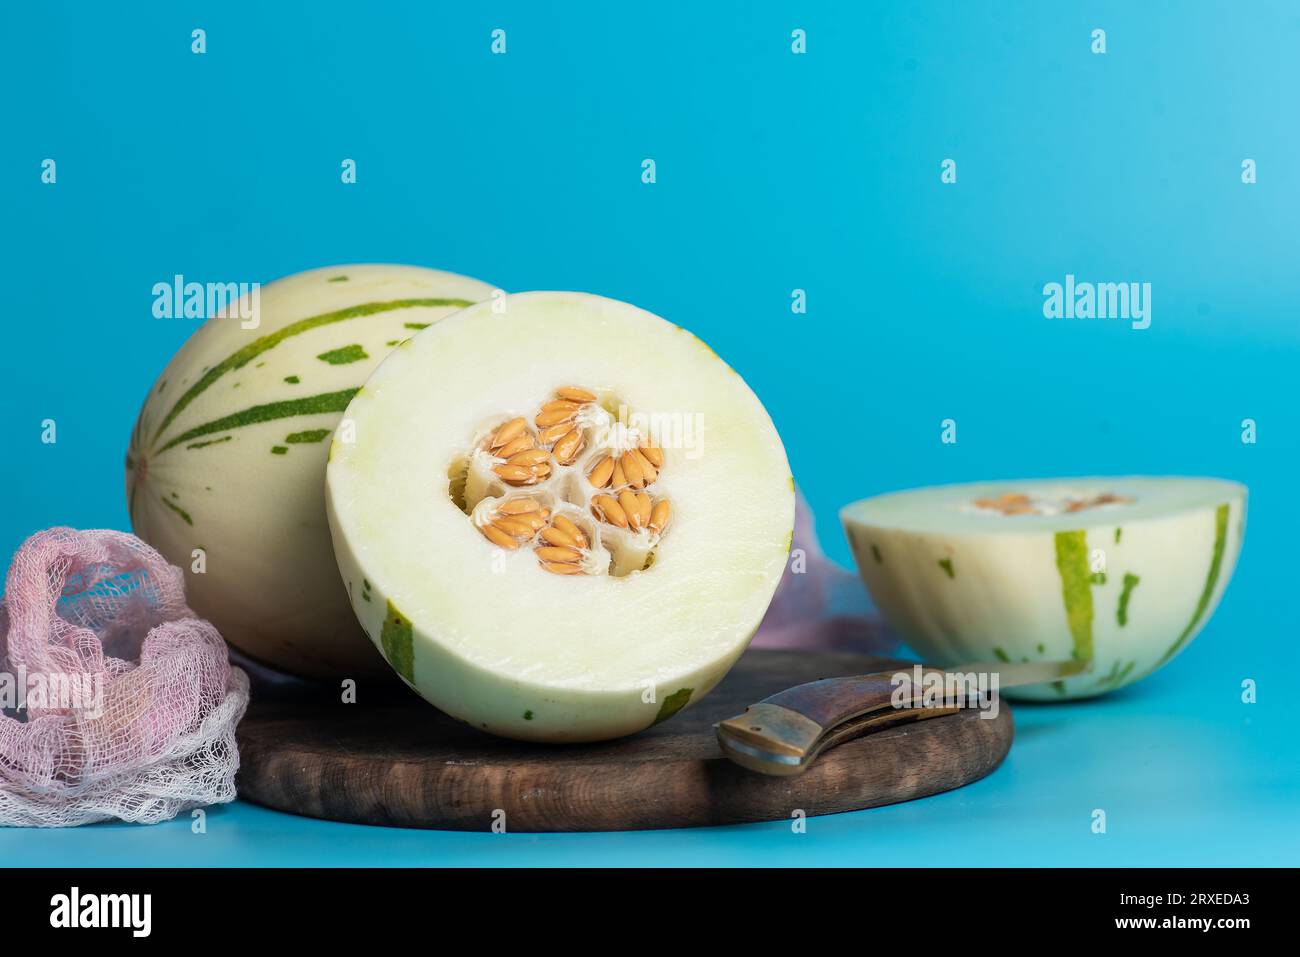 Elfenbeinfarbene gaya-Melone mit grün gepunkteten Streifen und Flecken auf blauem Hintergrund. Bunte reife, saftige und weiche Früchte, süßer Geschmack mit blumigen Noten. Ganz und gar Stockfoto